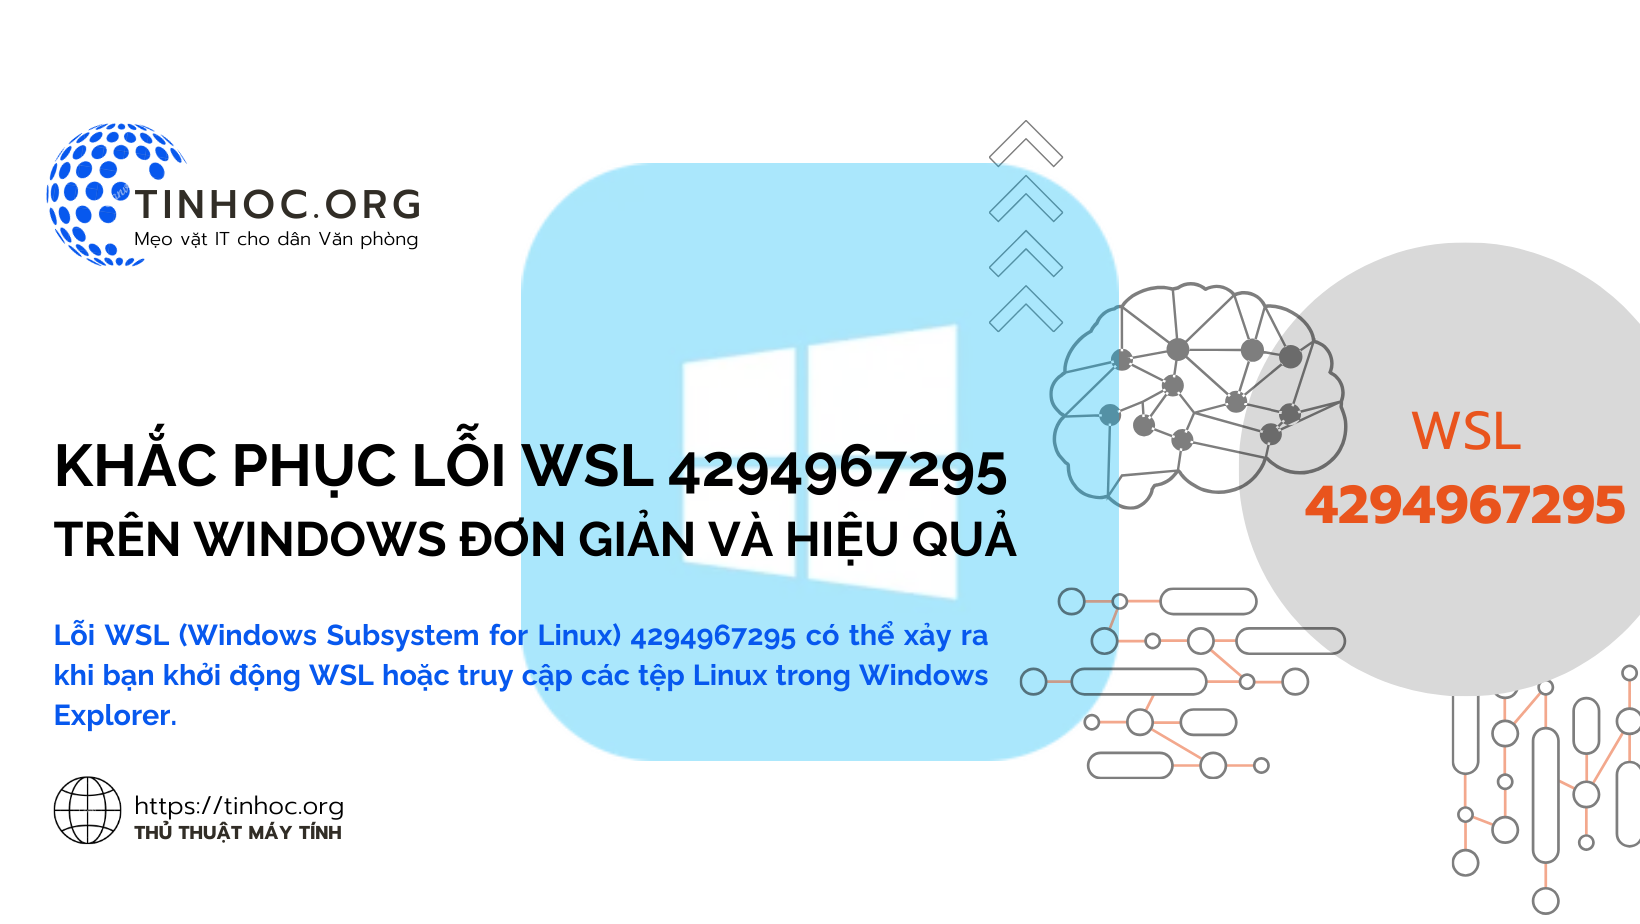 Lỗi WSL (Windows Subsystem for Linux) 4294967295 có thể xảy ra khi bạn khởi động WSL hoặc truy cập các tệp Linux trong Windows Explorer.